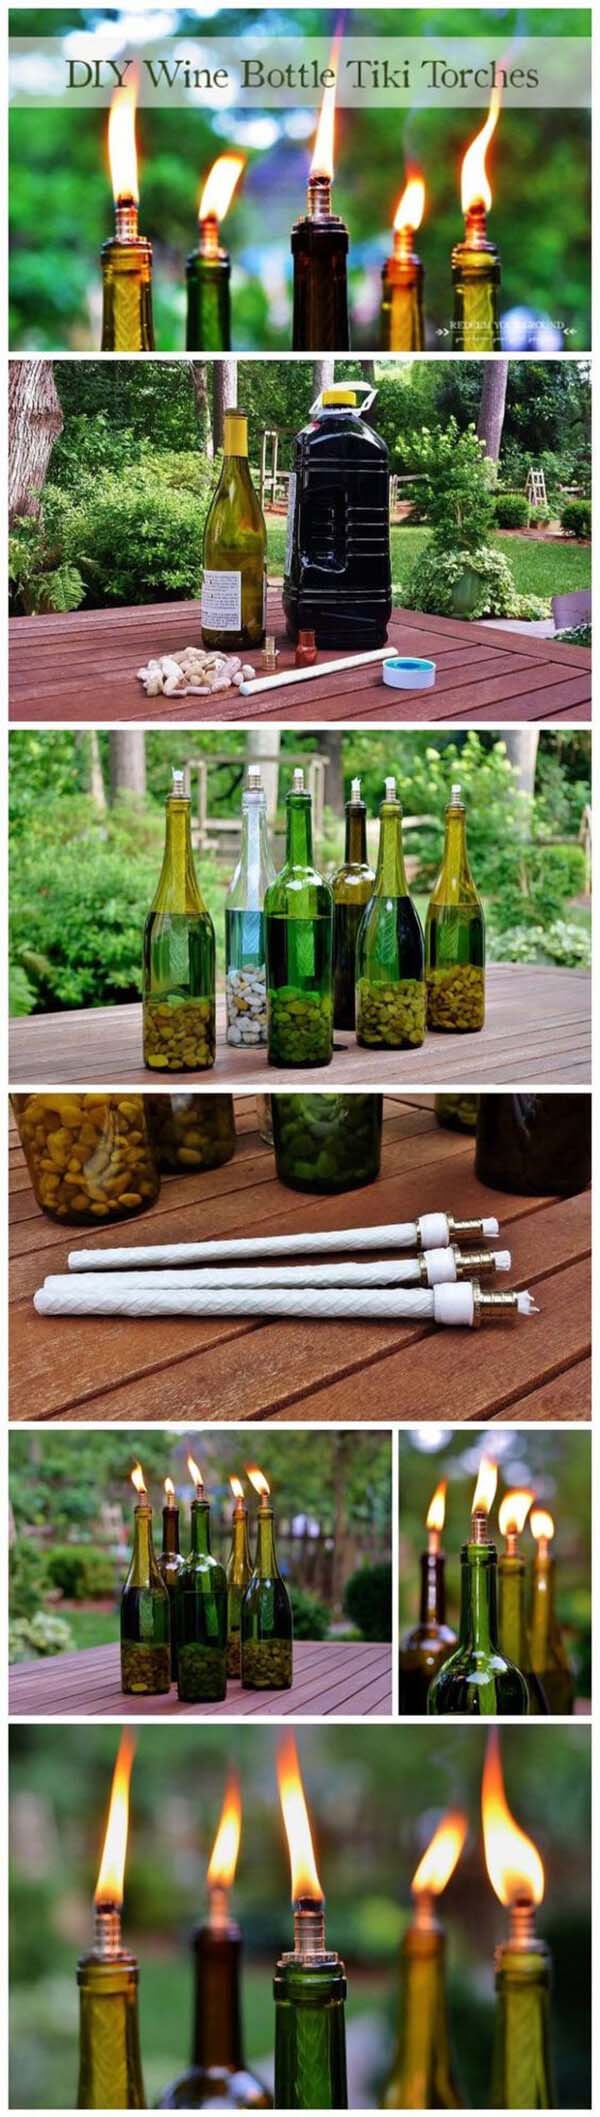 DIY Wine Bottle Tiki Torches #winebottle #crafts #repurpose #decorhomeideas